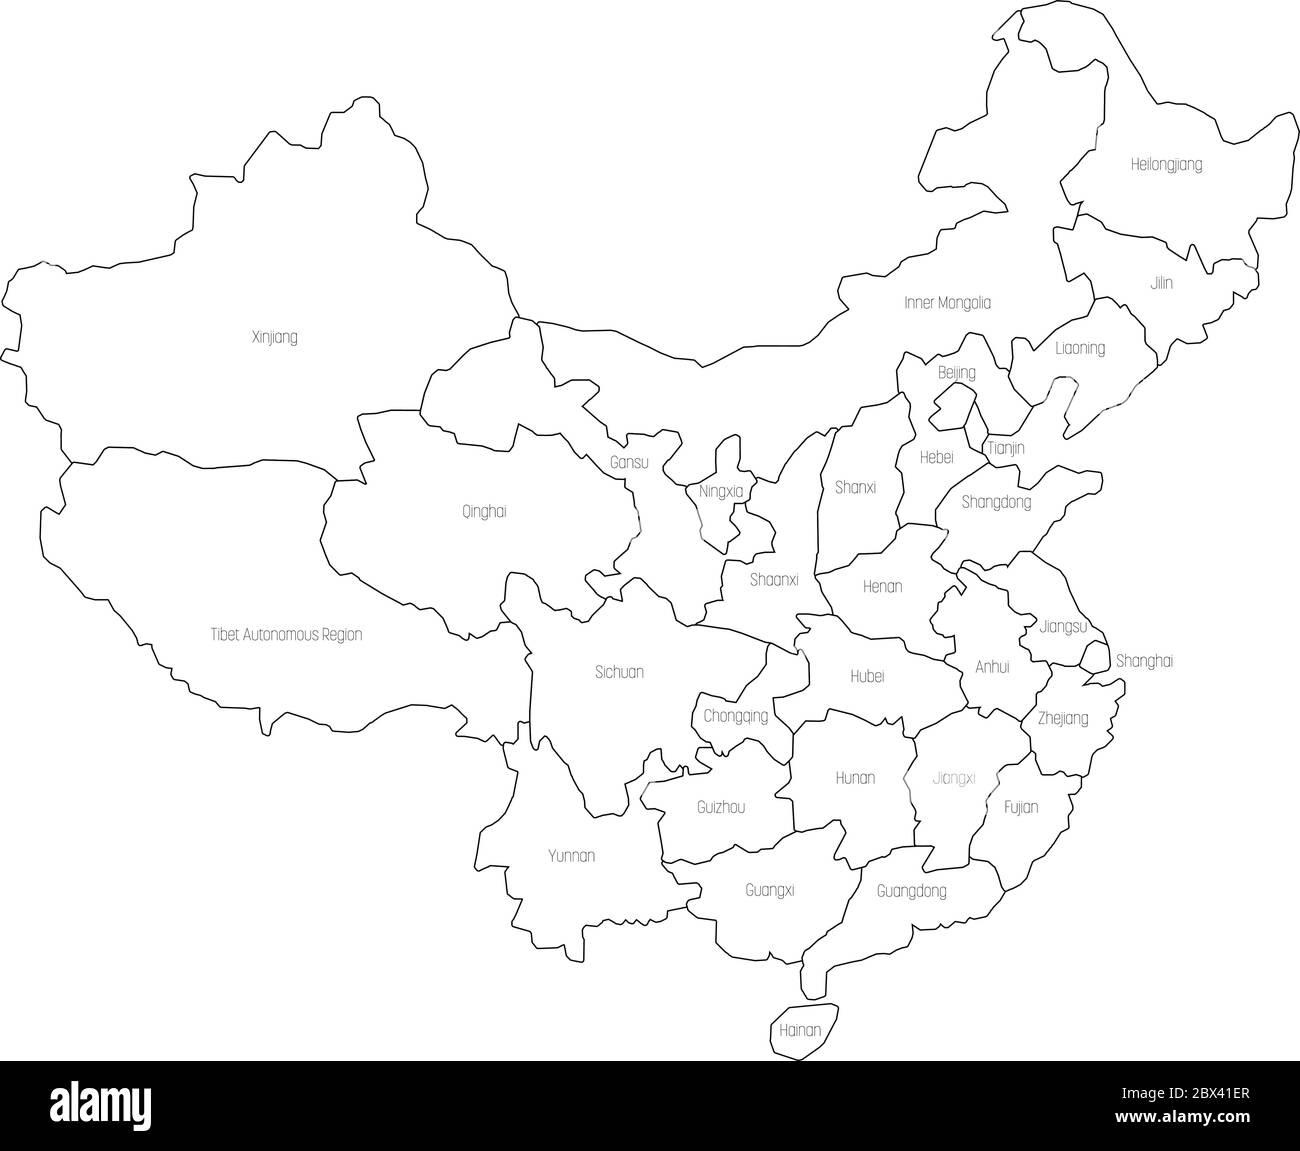 Mappa regionale delle province amministrative della Cina. Sottile contorno nero su sfondo bianco. Illustrazione vettoriale. Illustrazione Vettoriale